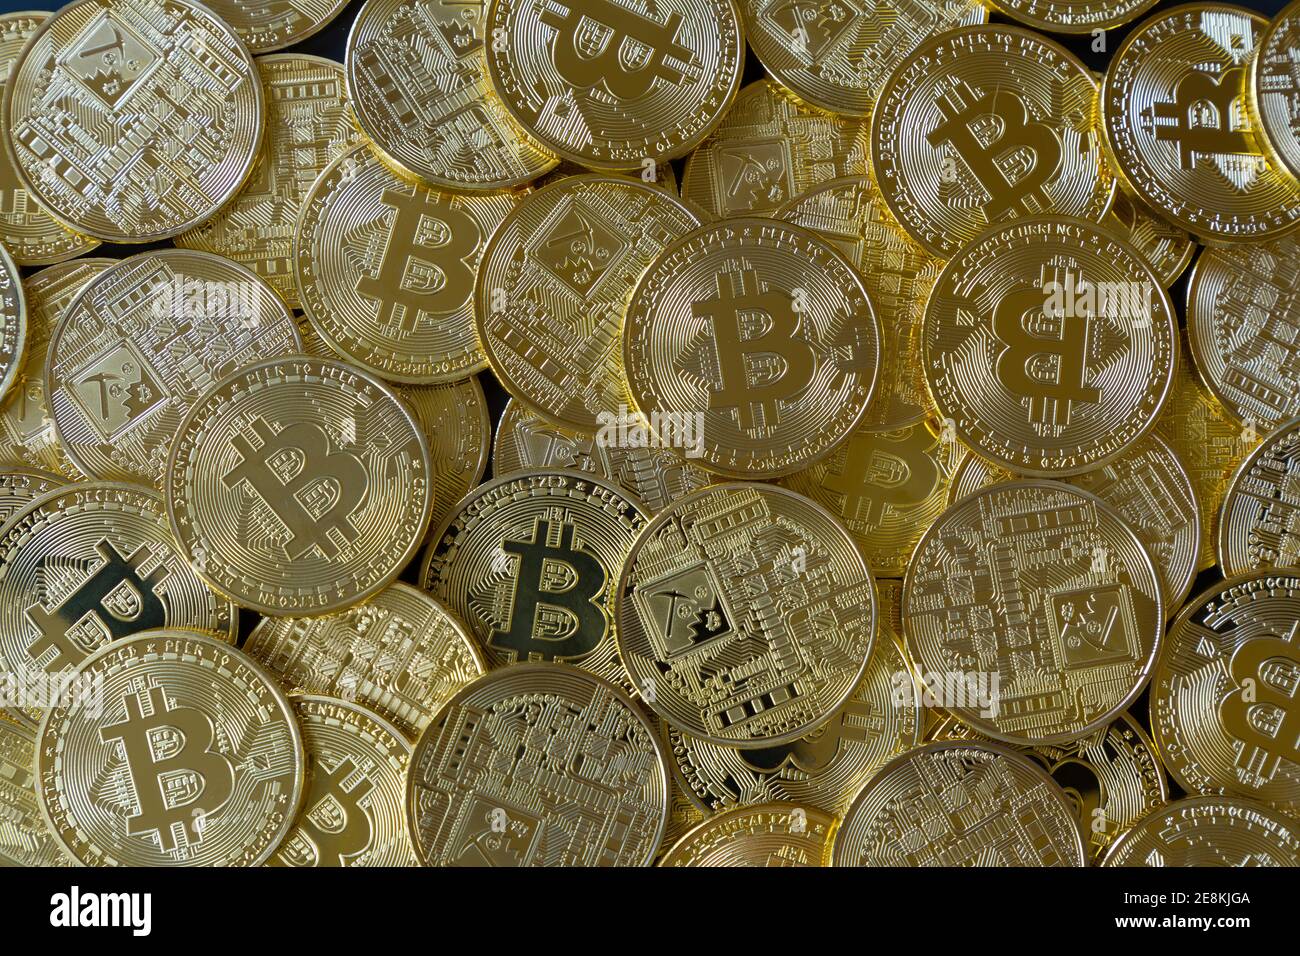 Ein Haufen von vielen goldenen Bitcoins. Kryptowährung Konzept Stockfoto